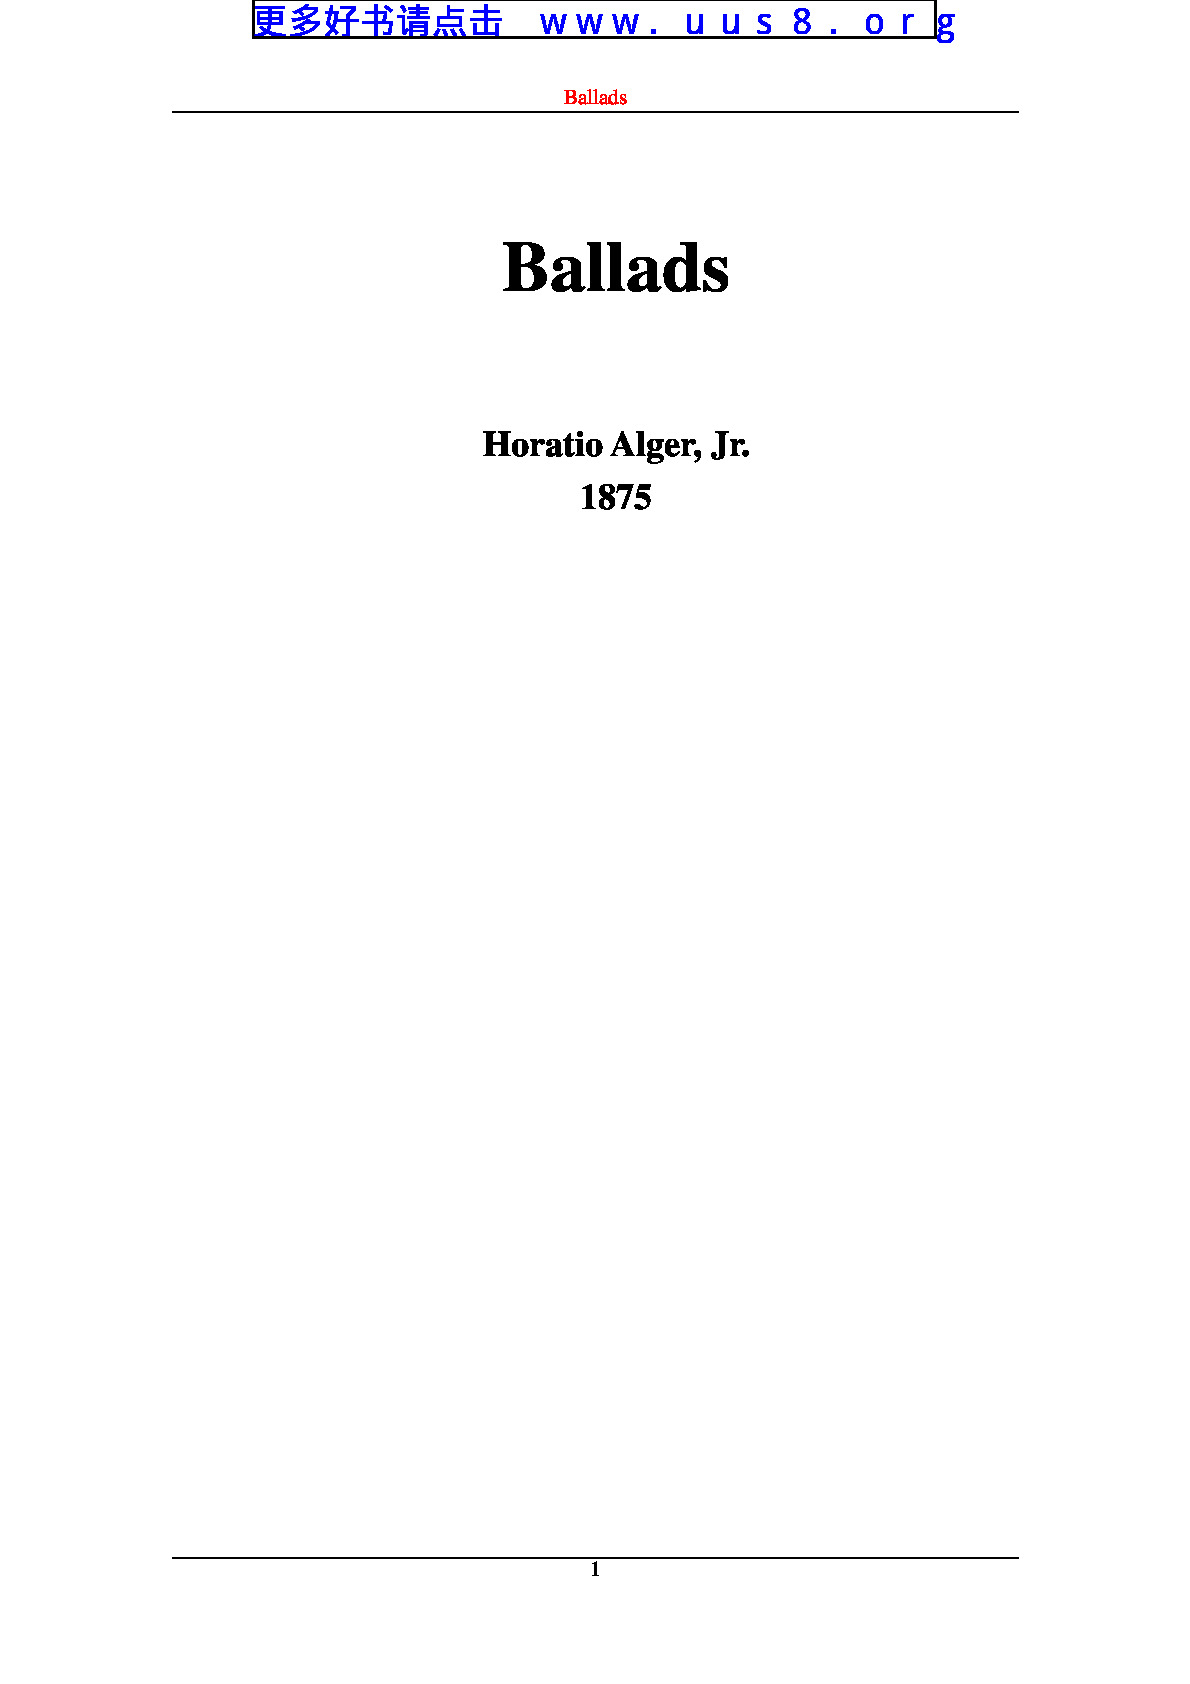 ballads(民歌)